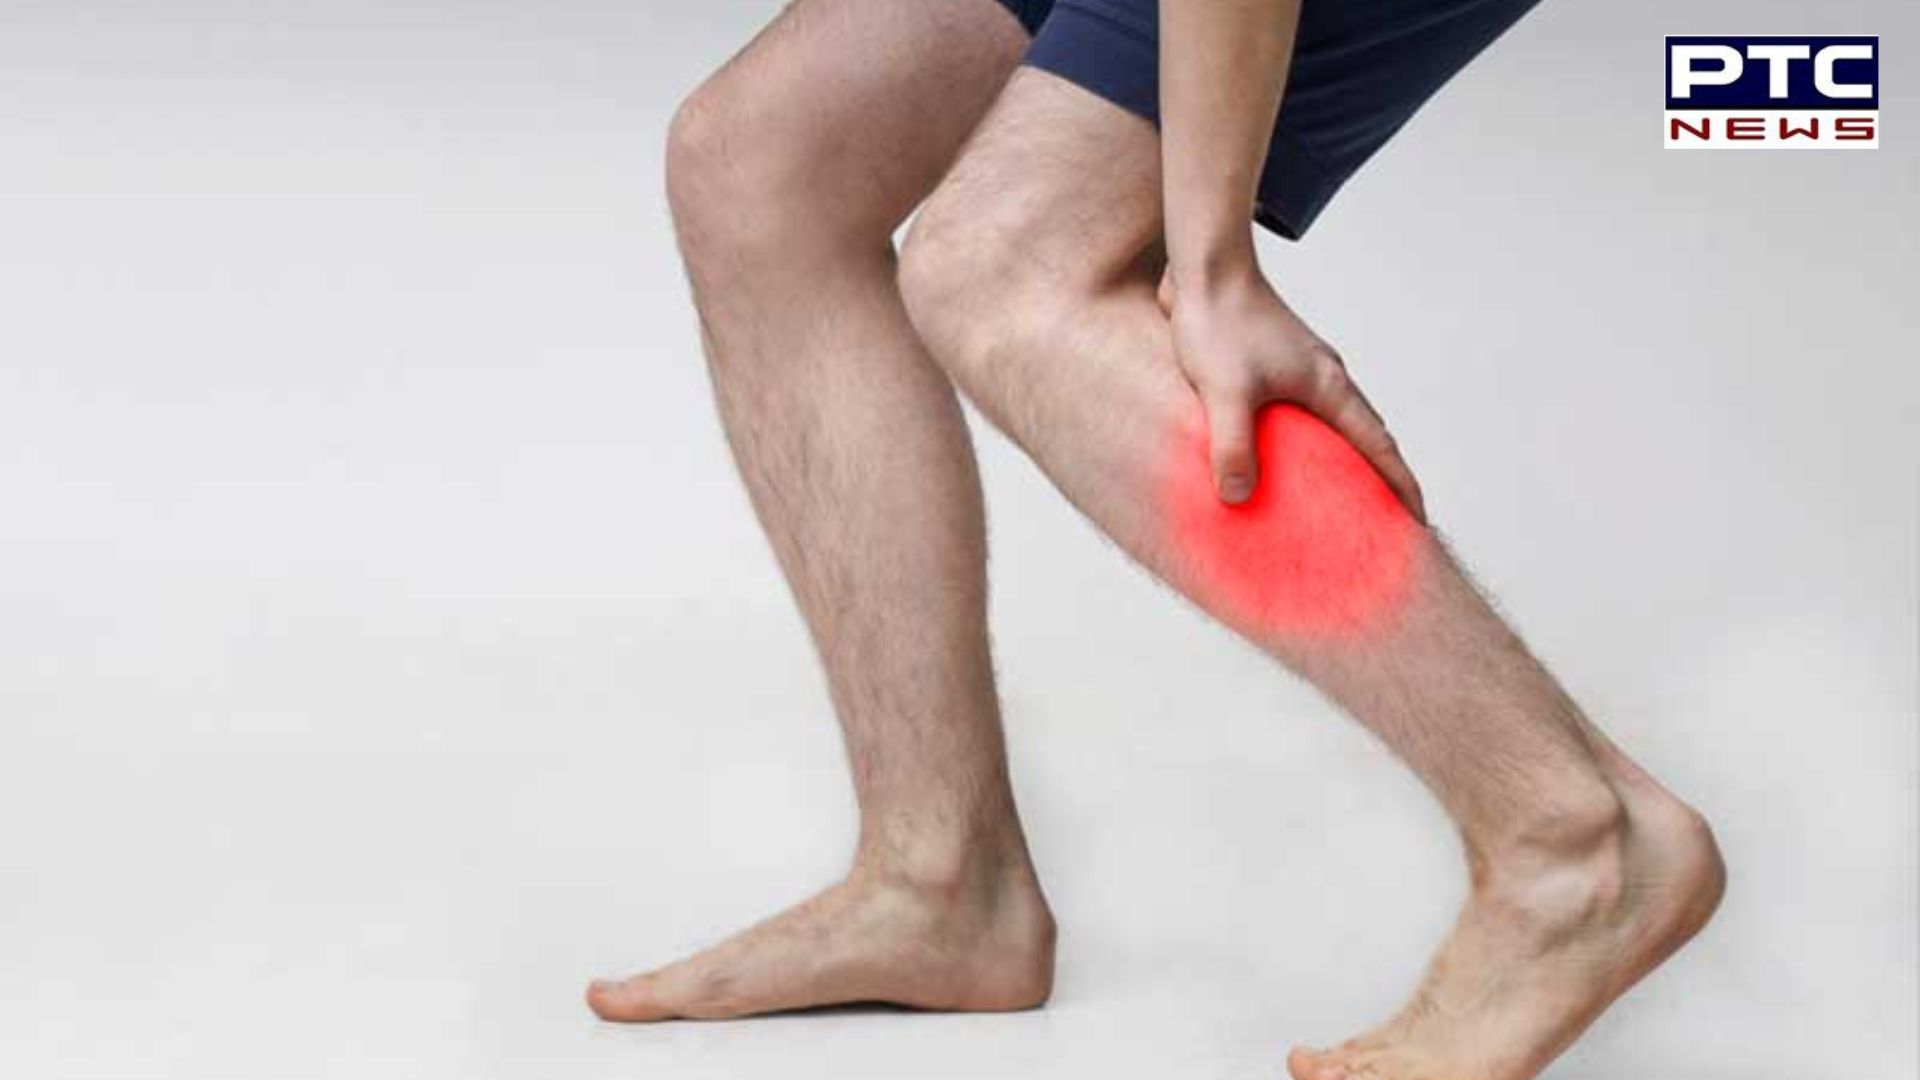 Leg Attack Symptoms: ਲੱਤਾਂ ਦਾ ਦੌਰਾ ਕੀ ਹੈ? ਜਾਣੋ ਇਸ ਦੇ ਲੱਛਣ ਤੇ ਬਚਾਅ ਦੇ ਢੰਗ